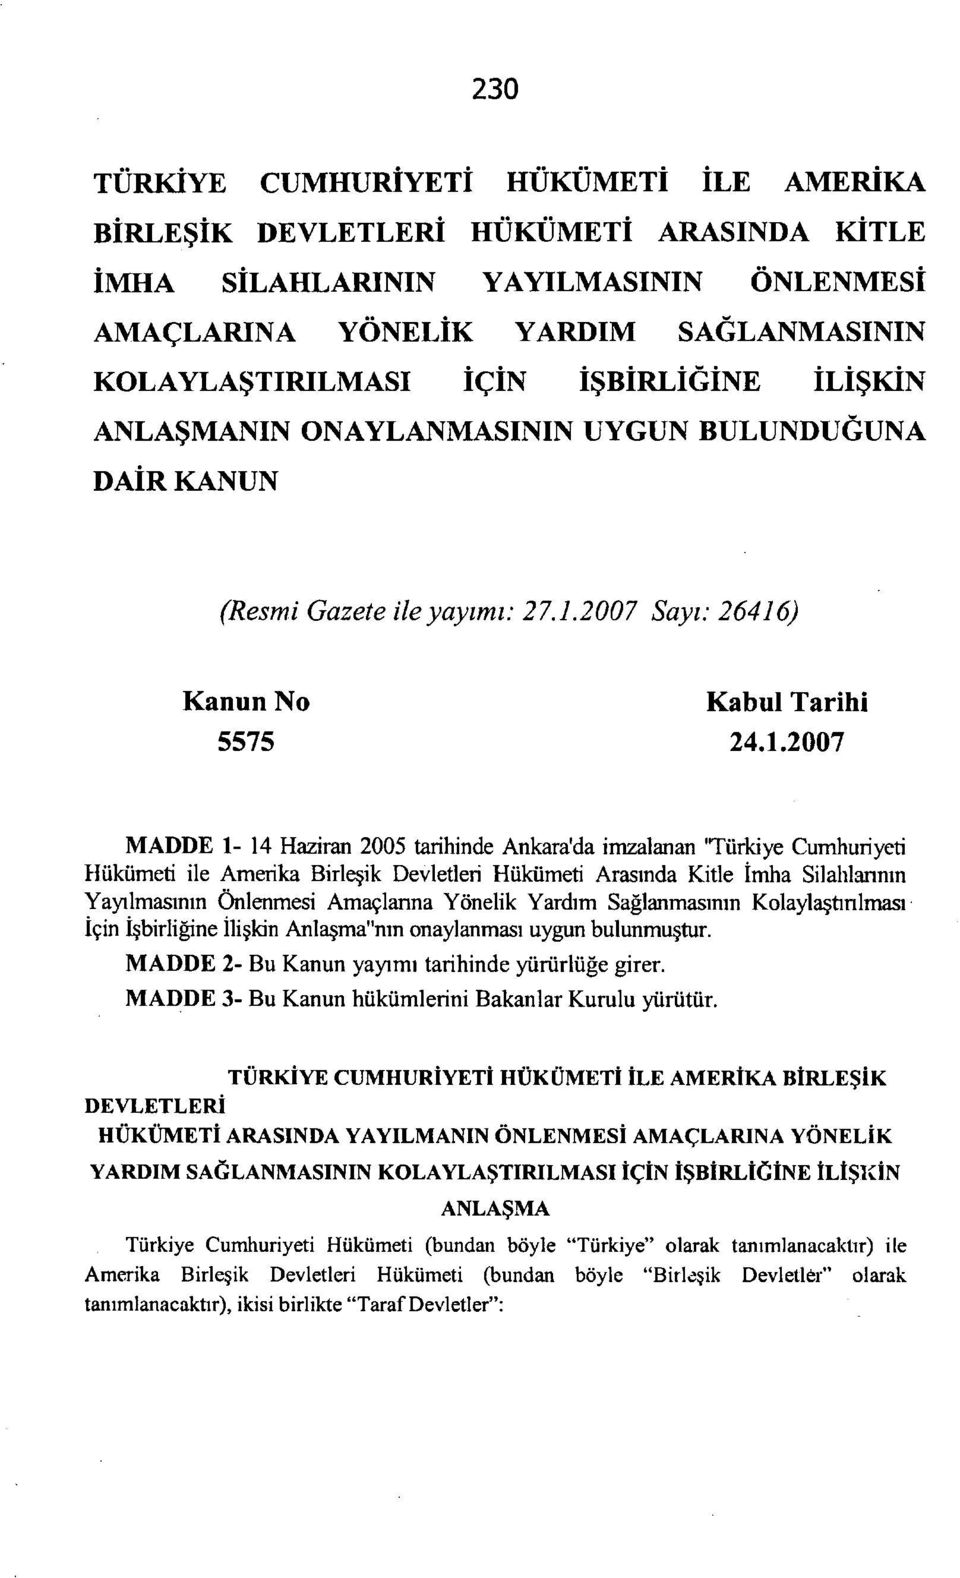 2007 Sayı: 26416) Kanun No Kabul Tarihi MADDE 1-14 Haziran 2005 tarihinde Ankara'da imzalanan 'Türkiye Cumhuriyeti Hükümeti ile Amerika Birleşik Devletleri Hükümeti Arasında Kitle İmha Silahlarının